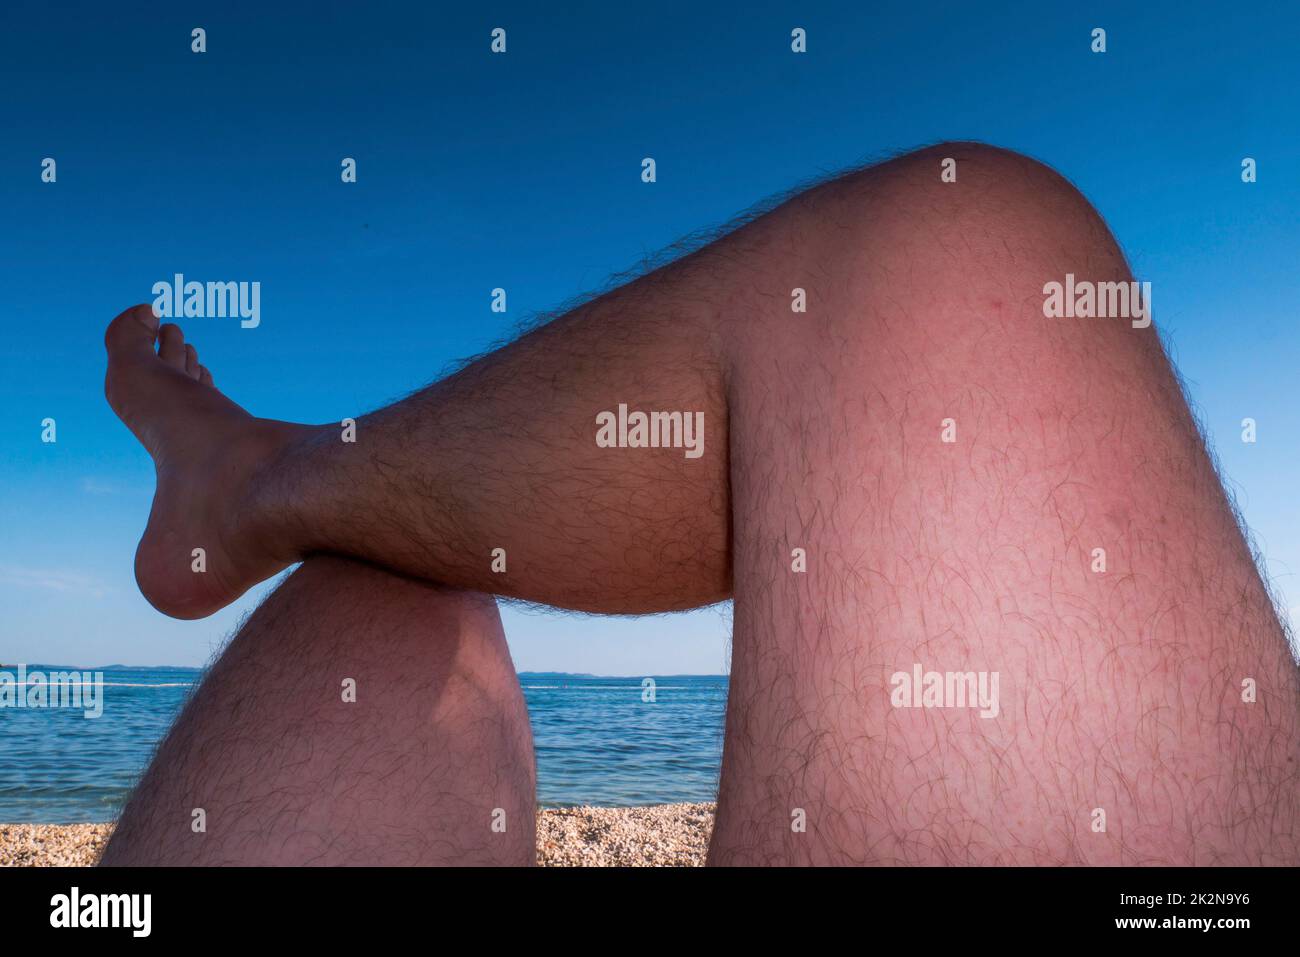 Le gambe dell'uomo stanno prendendo il sole su una spiaggia Foto Stock